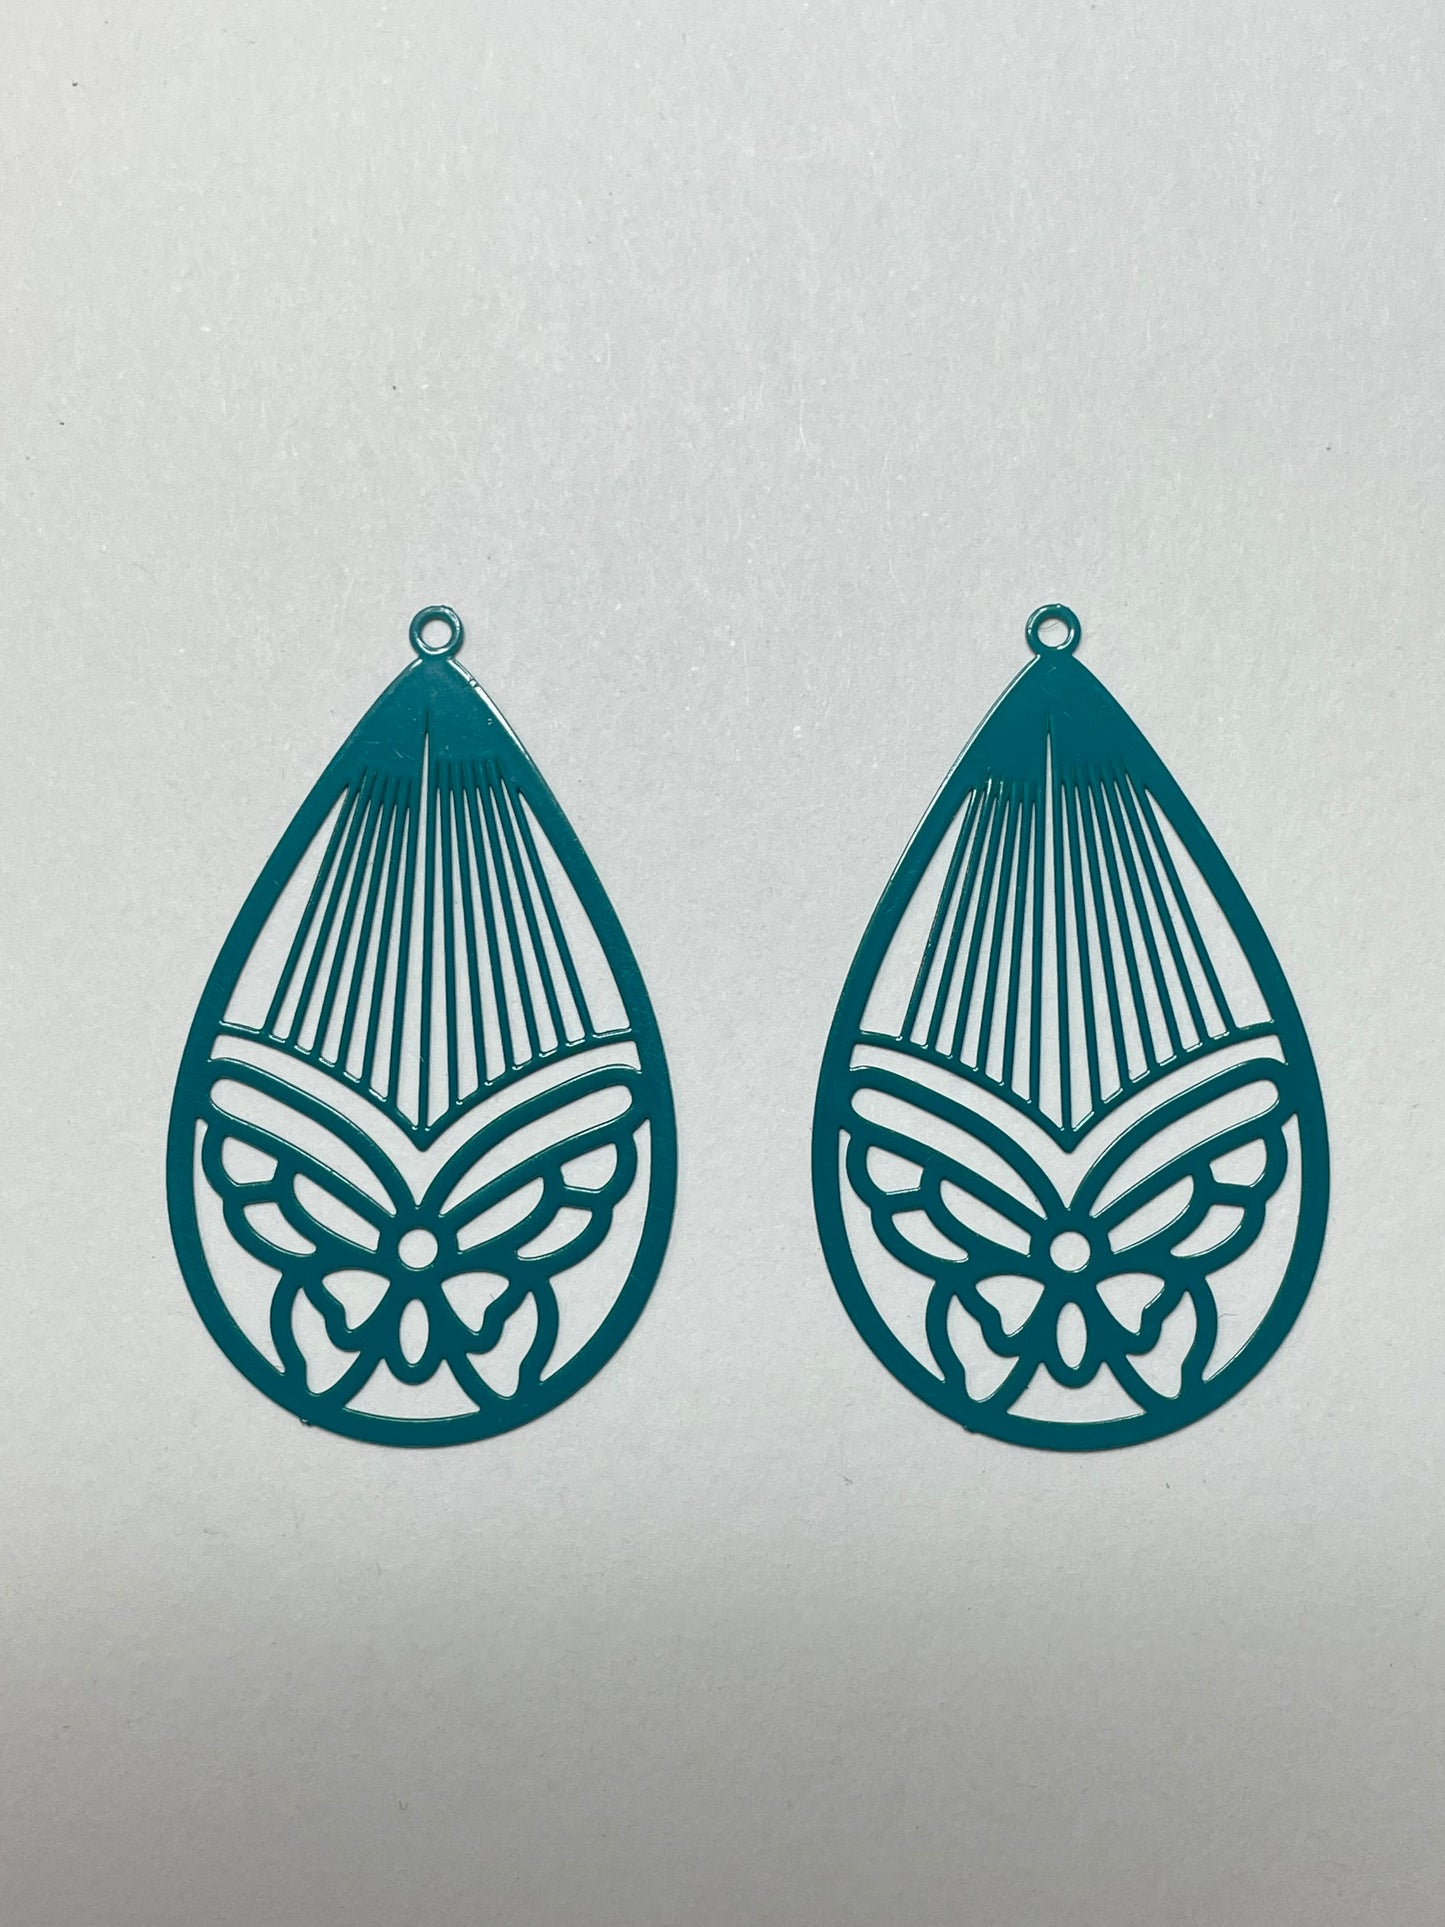 Filigree Butterfly Teardrop Earring Charms - 2ea (1 pair)